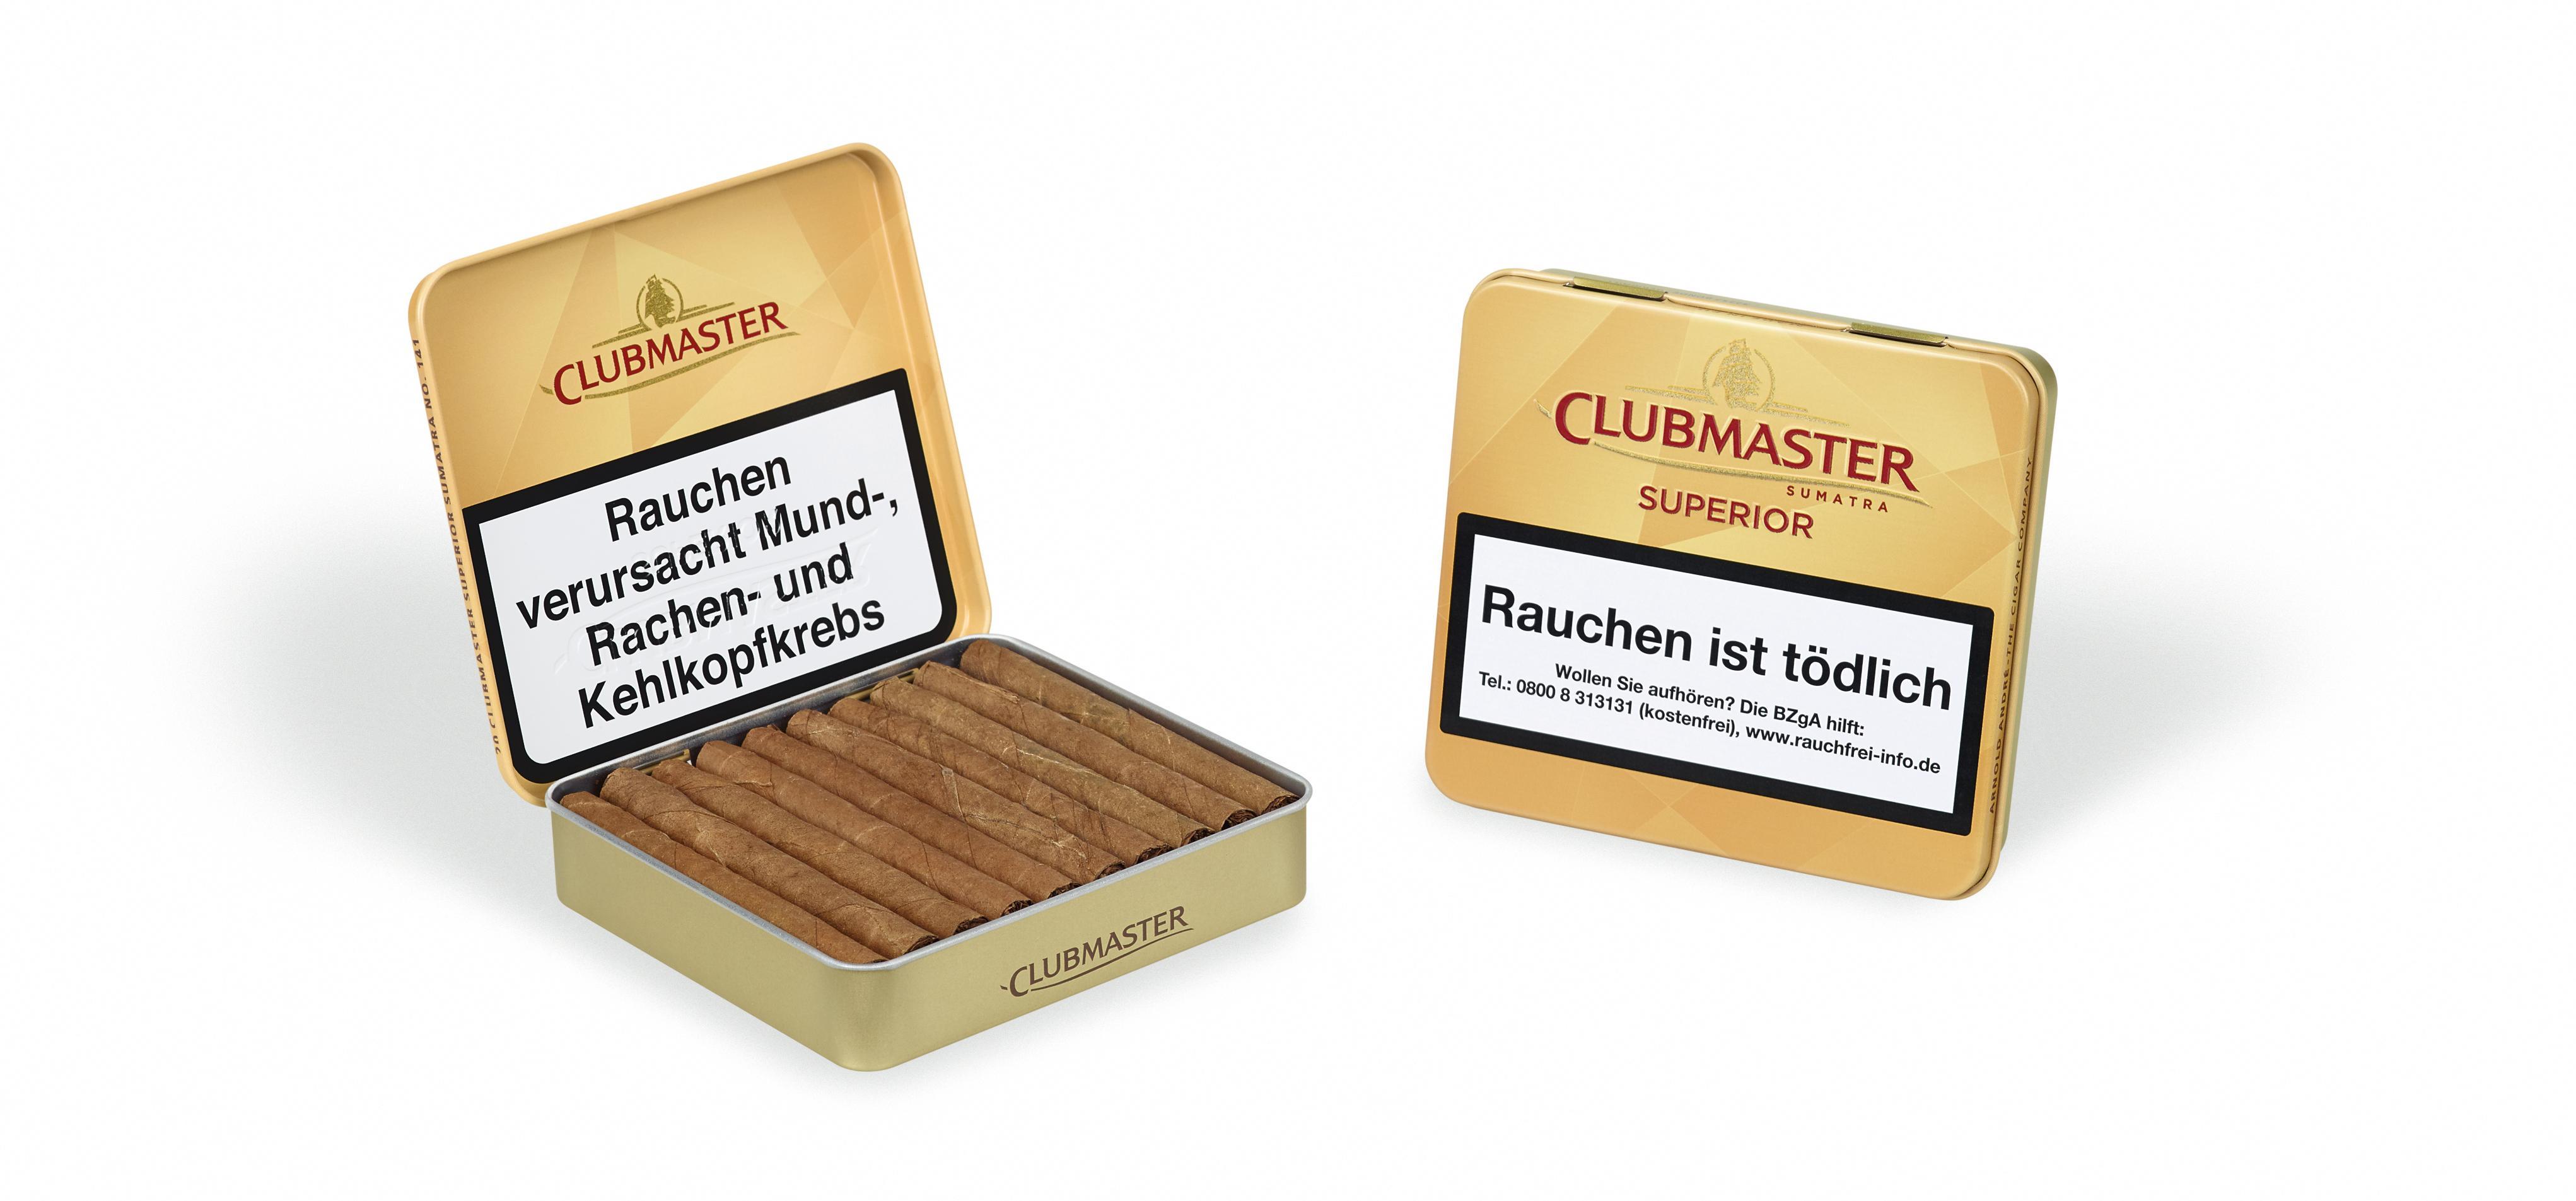 Clubmaster Superior Sumatra No. 141 5 x 20 Zigarillos